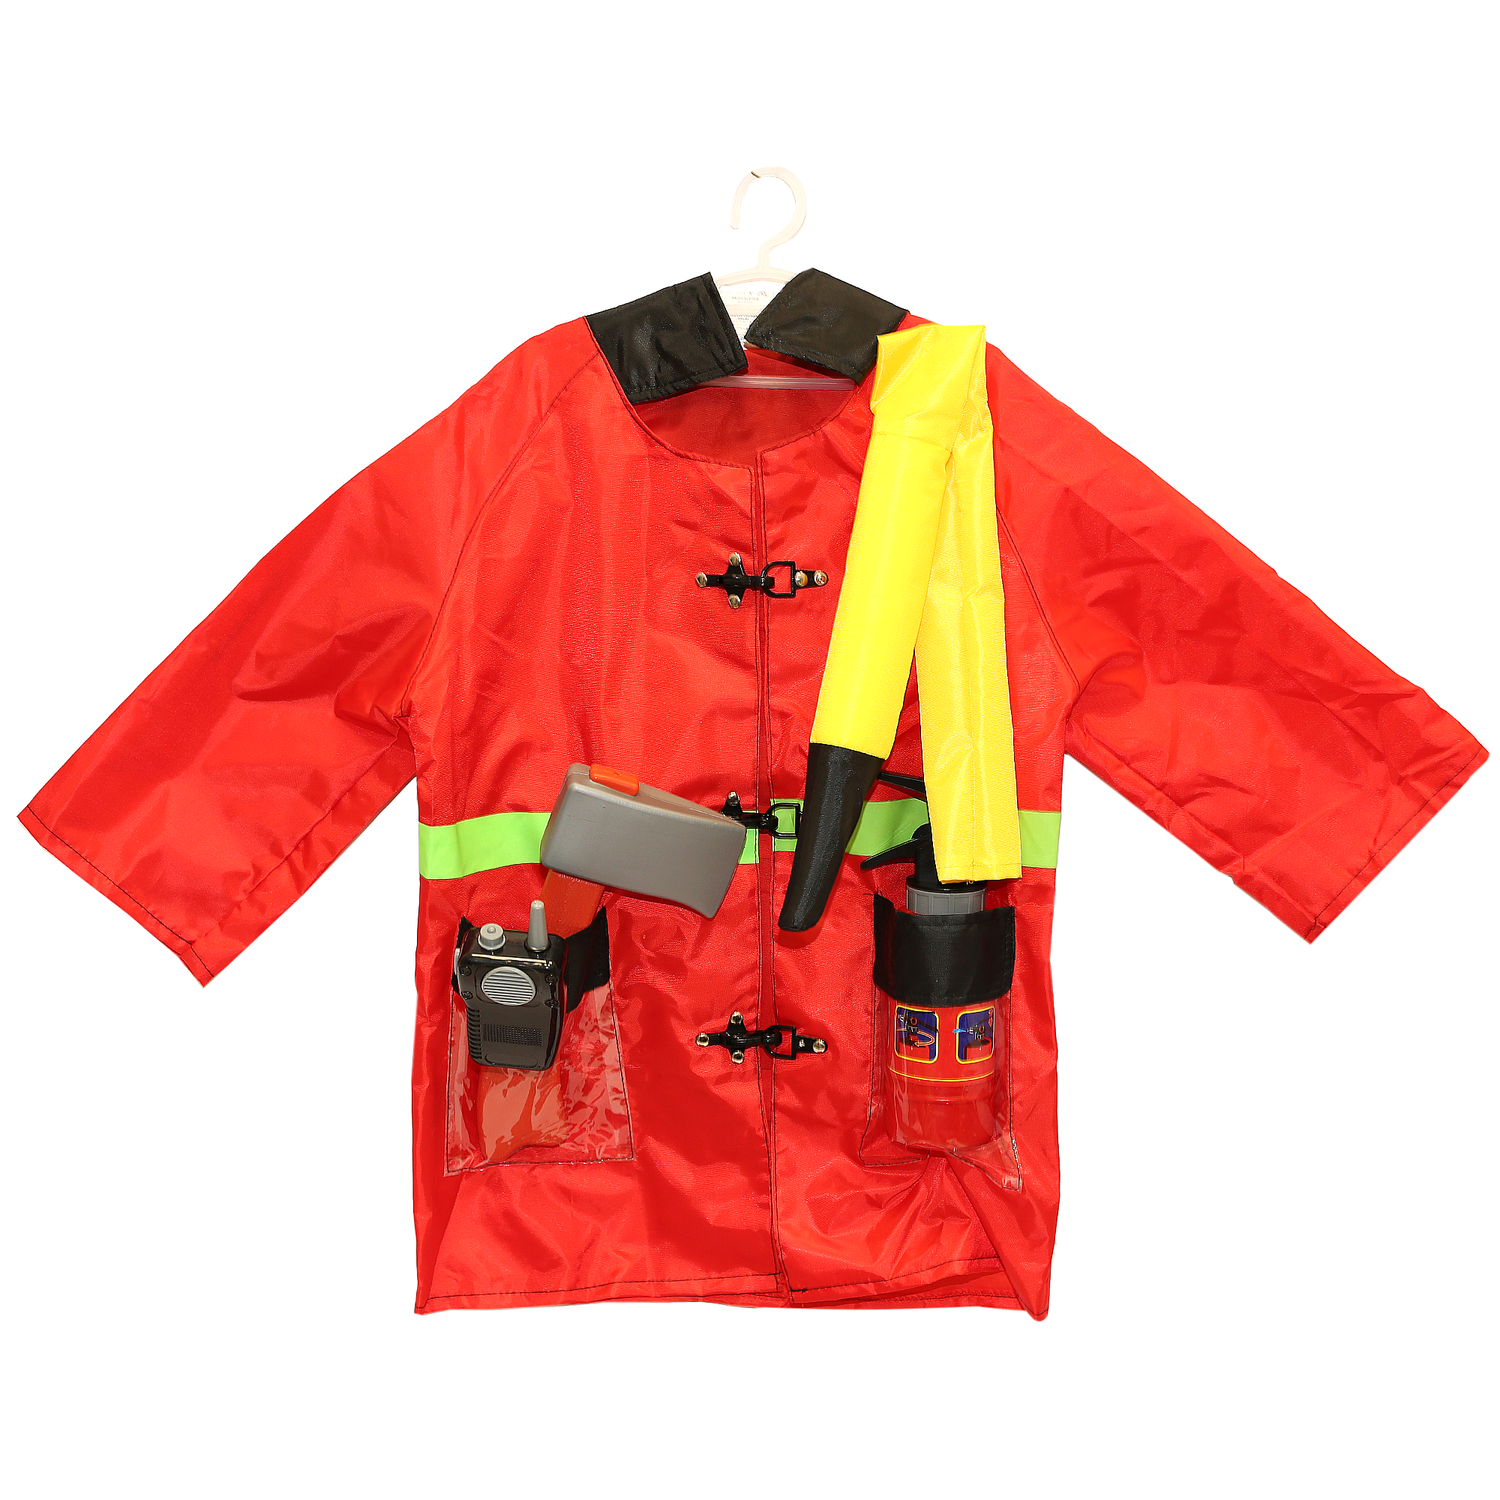 Игровой костюм Пожарный SHARKTOYS карнавальный костюм с аксессуарами от 3 до 8 лет 1000000070 - фото 3